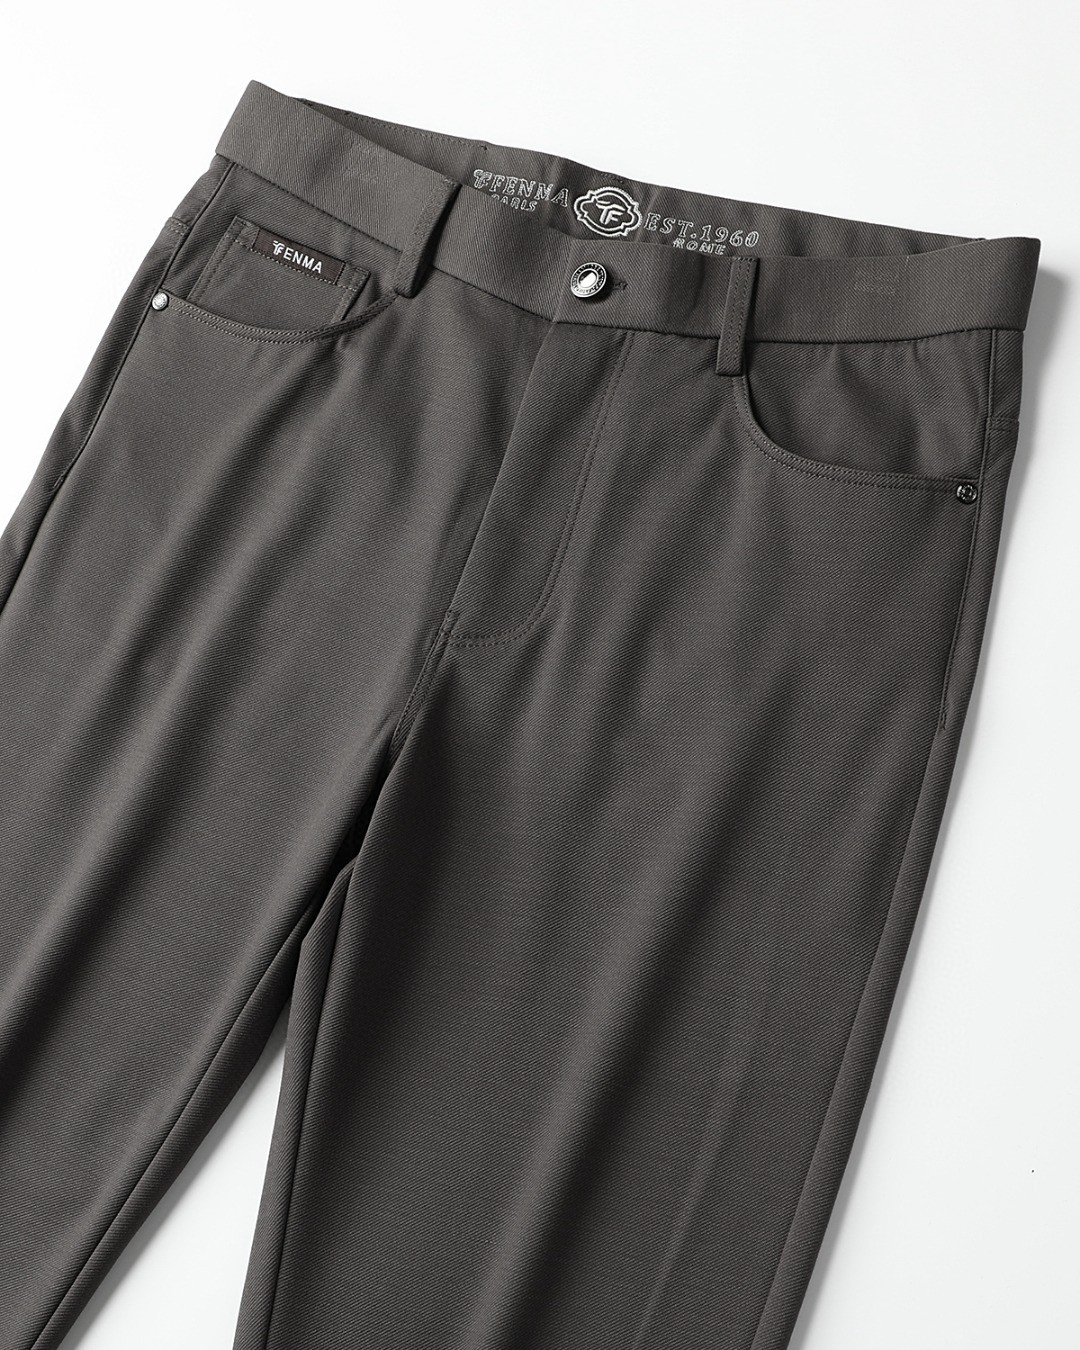 TF4ss春夏轻奢时尚定制休闲西裤简洁干练的风格精致卓越的品质男装每款的设计点跟舒适度都能做到平衡刚刚上